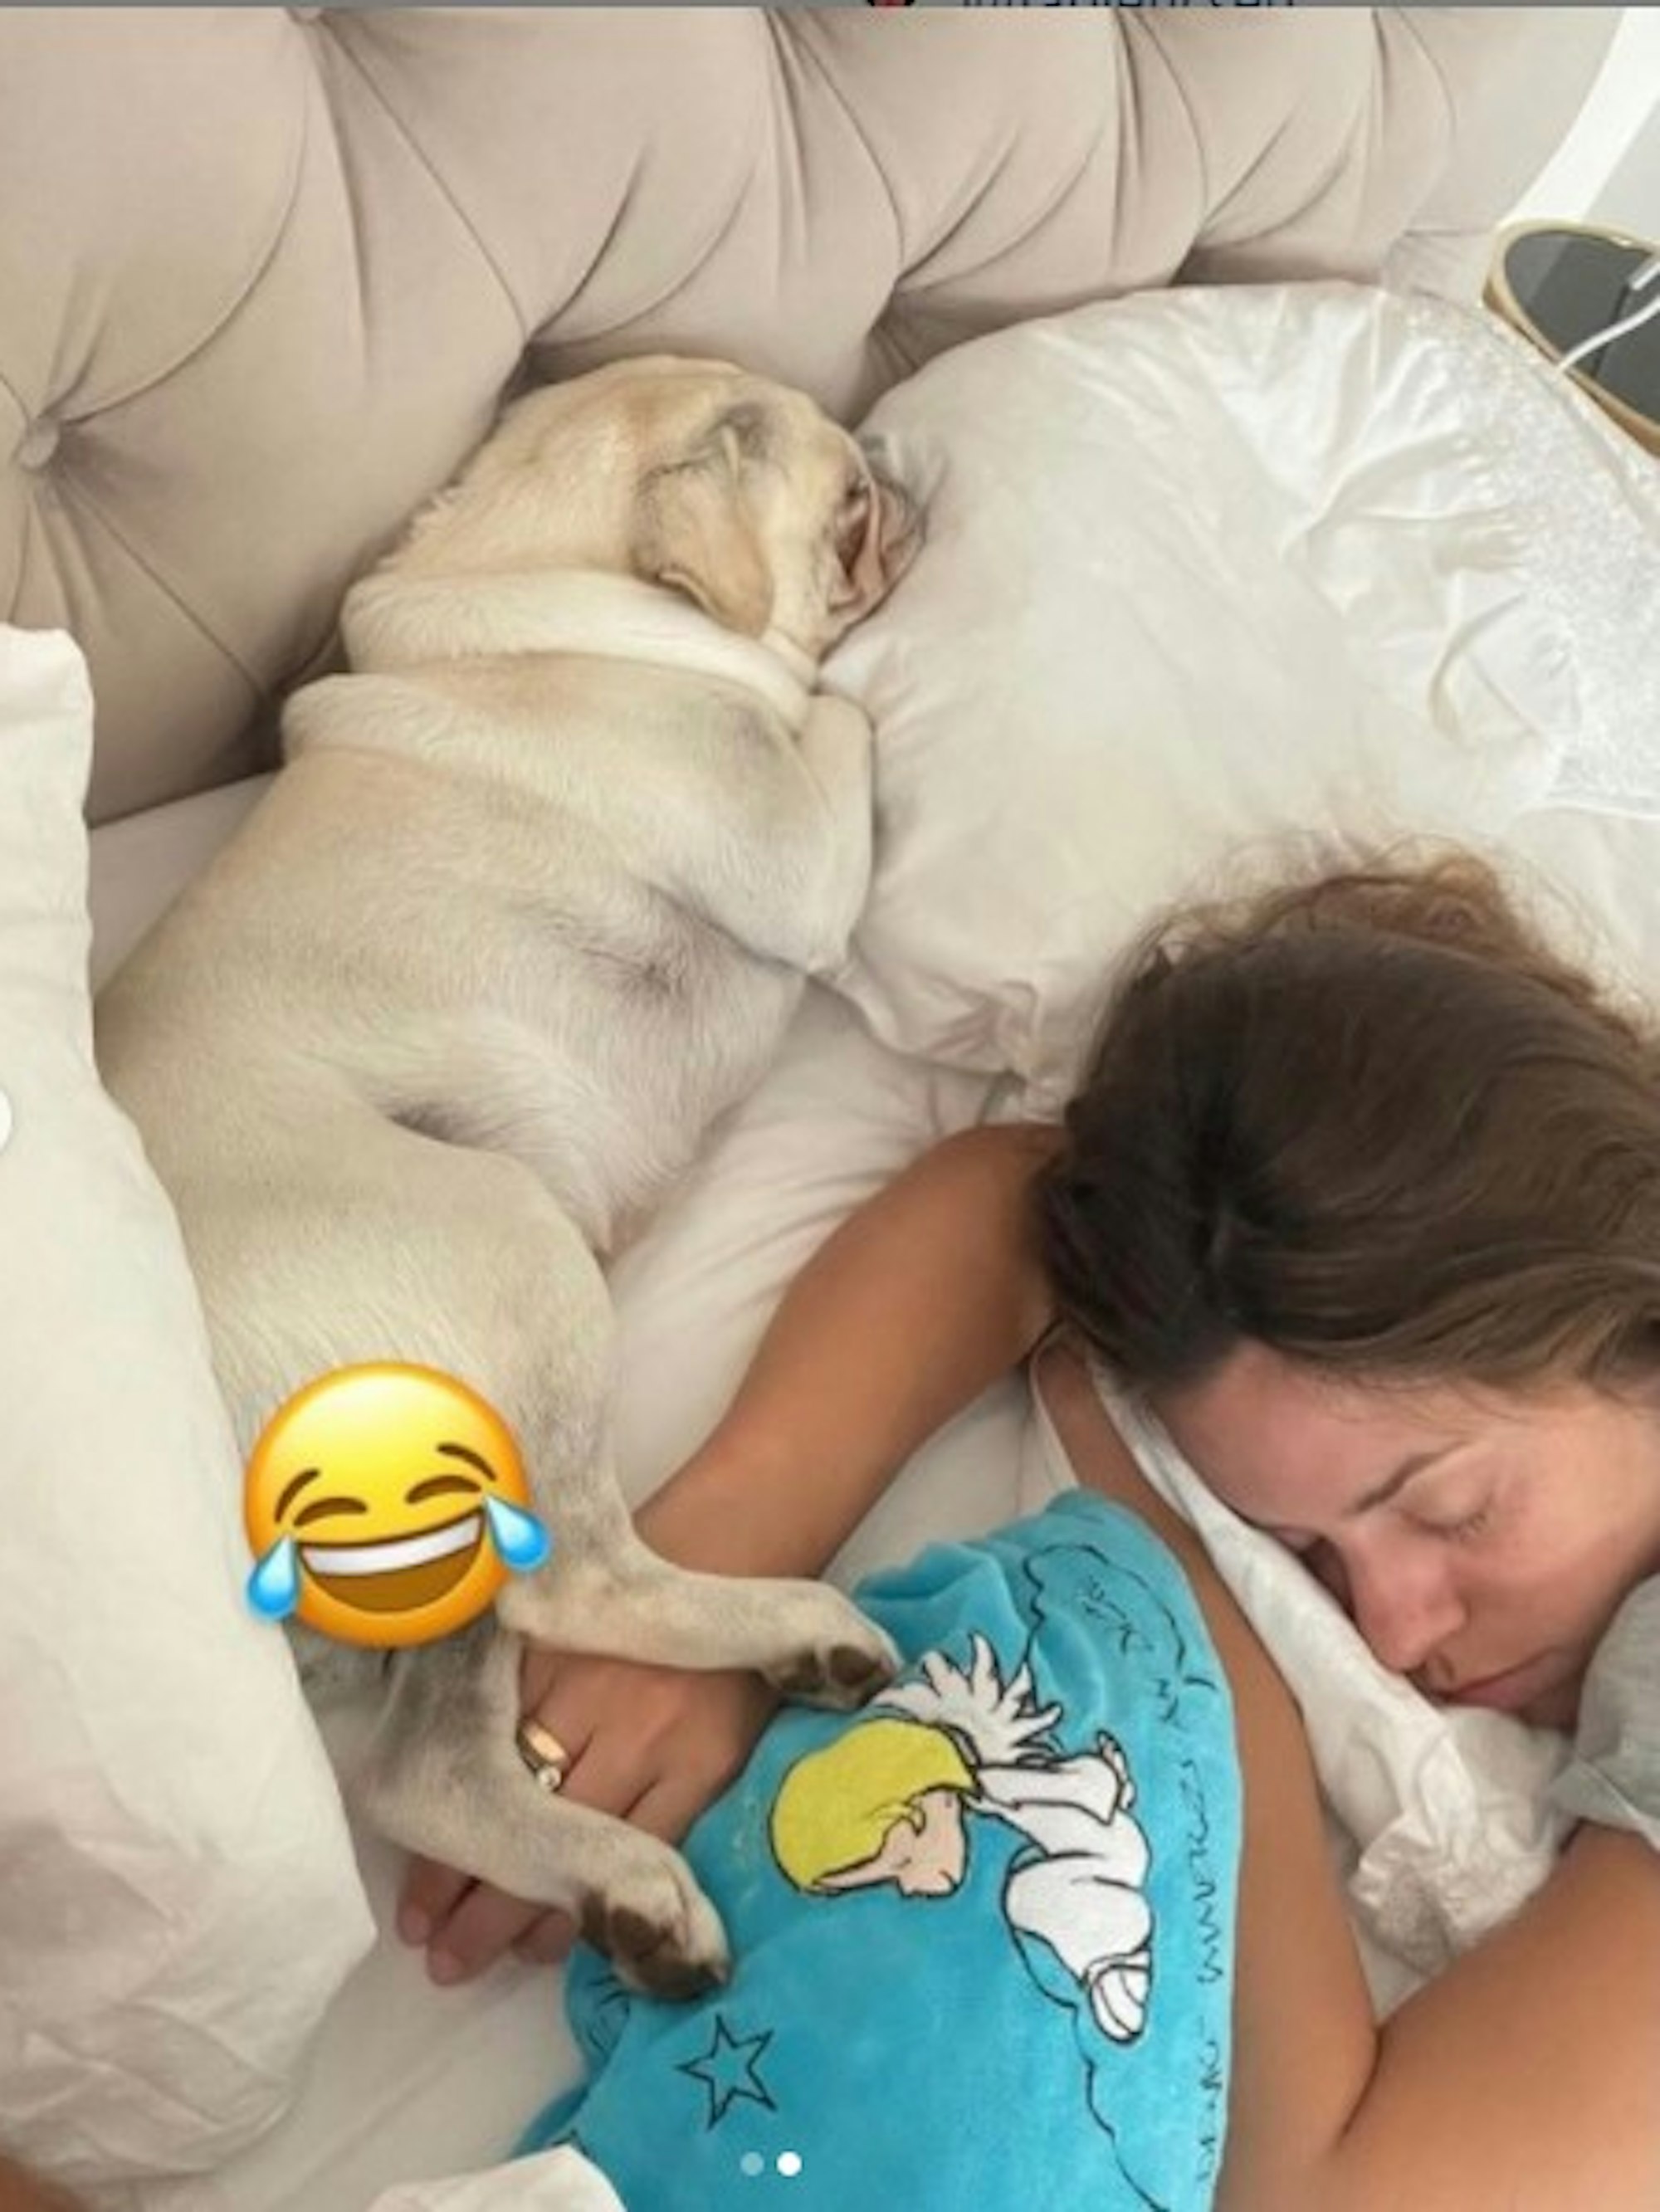 Vanessa Mai hat dieses Foto von sich im Bett am 25. Juli bei Instagram gepostet. Es zeigt sie schlafend mit ihrem Mopsrüden Ikaro.